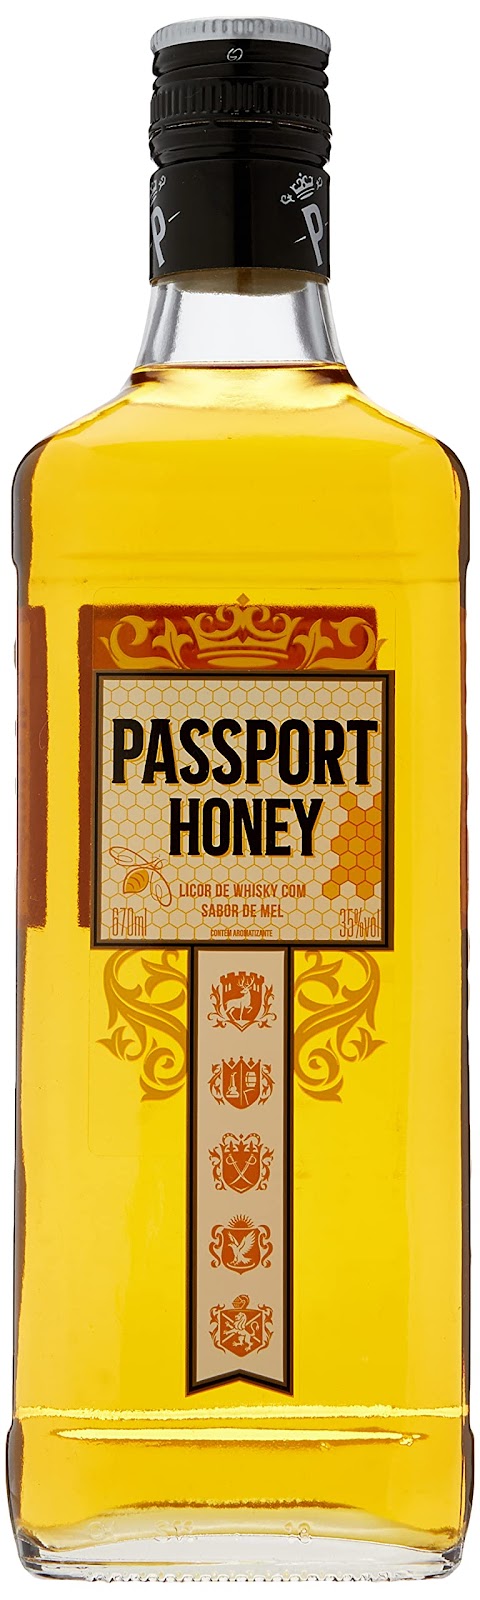 Passport Scotch Whisky Passport Honey 670 Ml